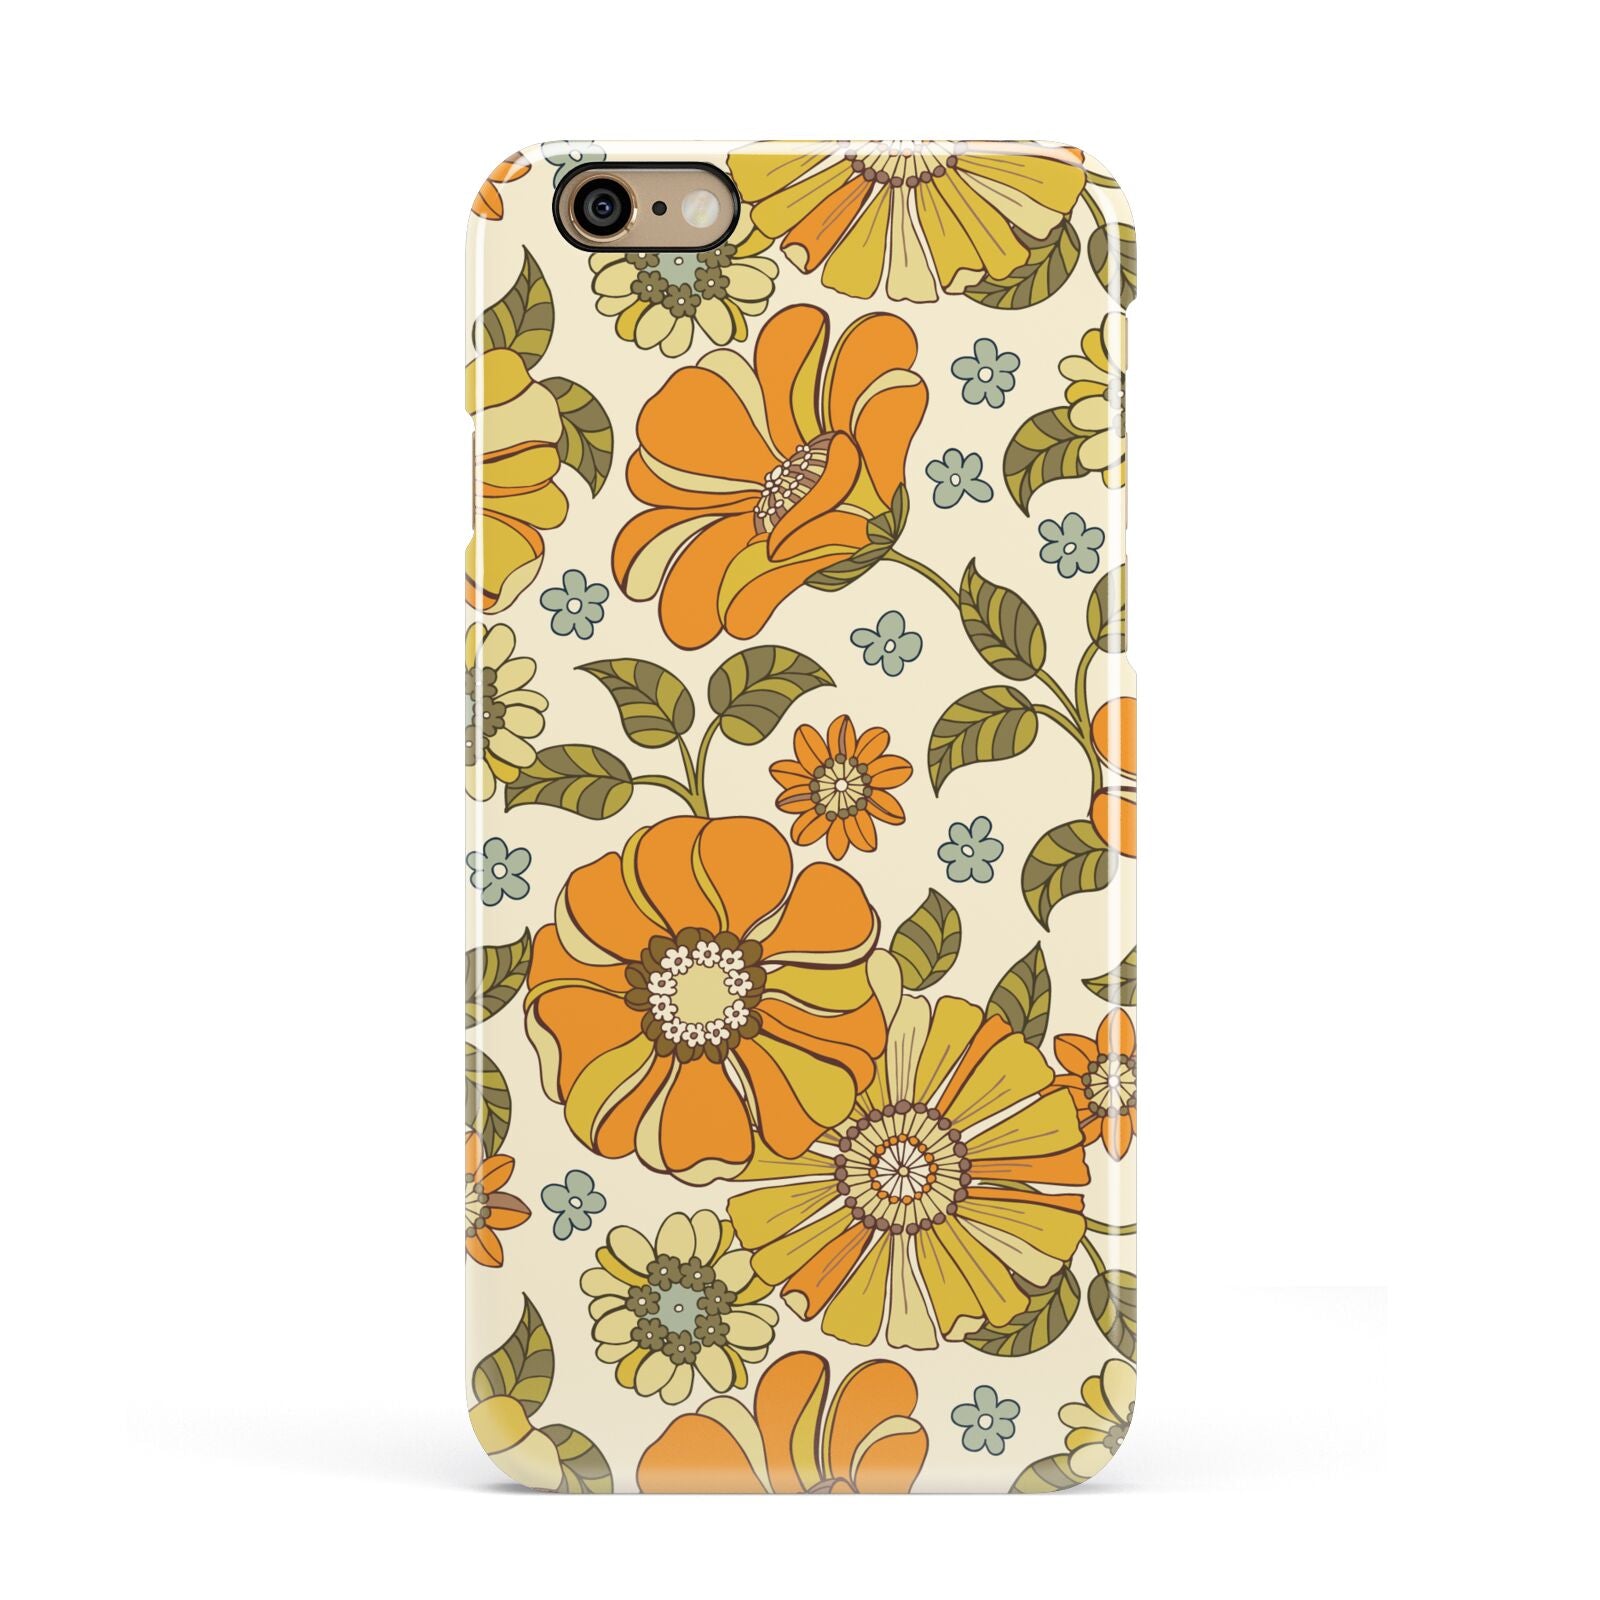 Vintage Floral Apple iPhone 6 3D Snap Case